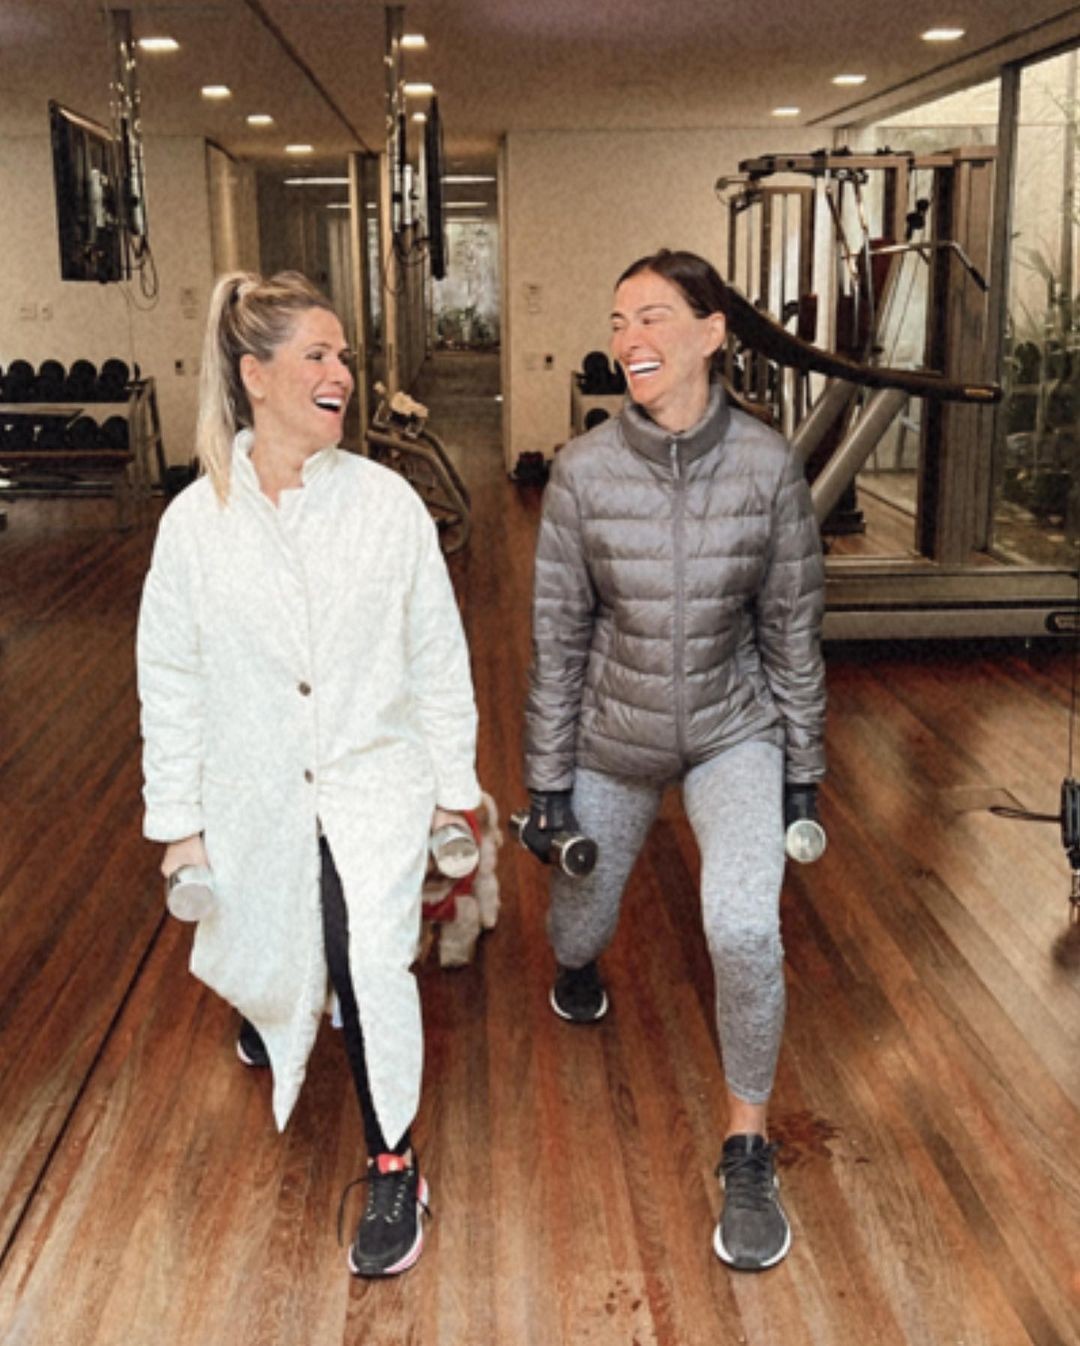 Ingrid Guimarães e Mônica Martelli posam de casaco na academia: 'frio com dignidade' (Foto: reprodução/instagram)